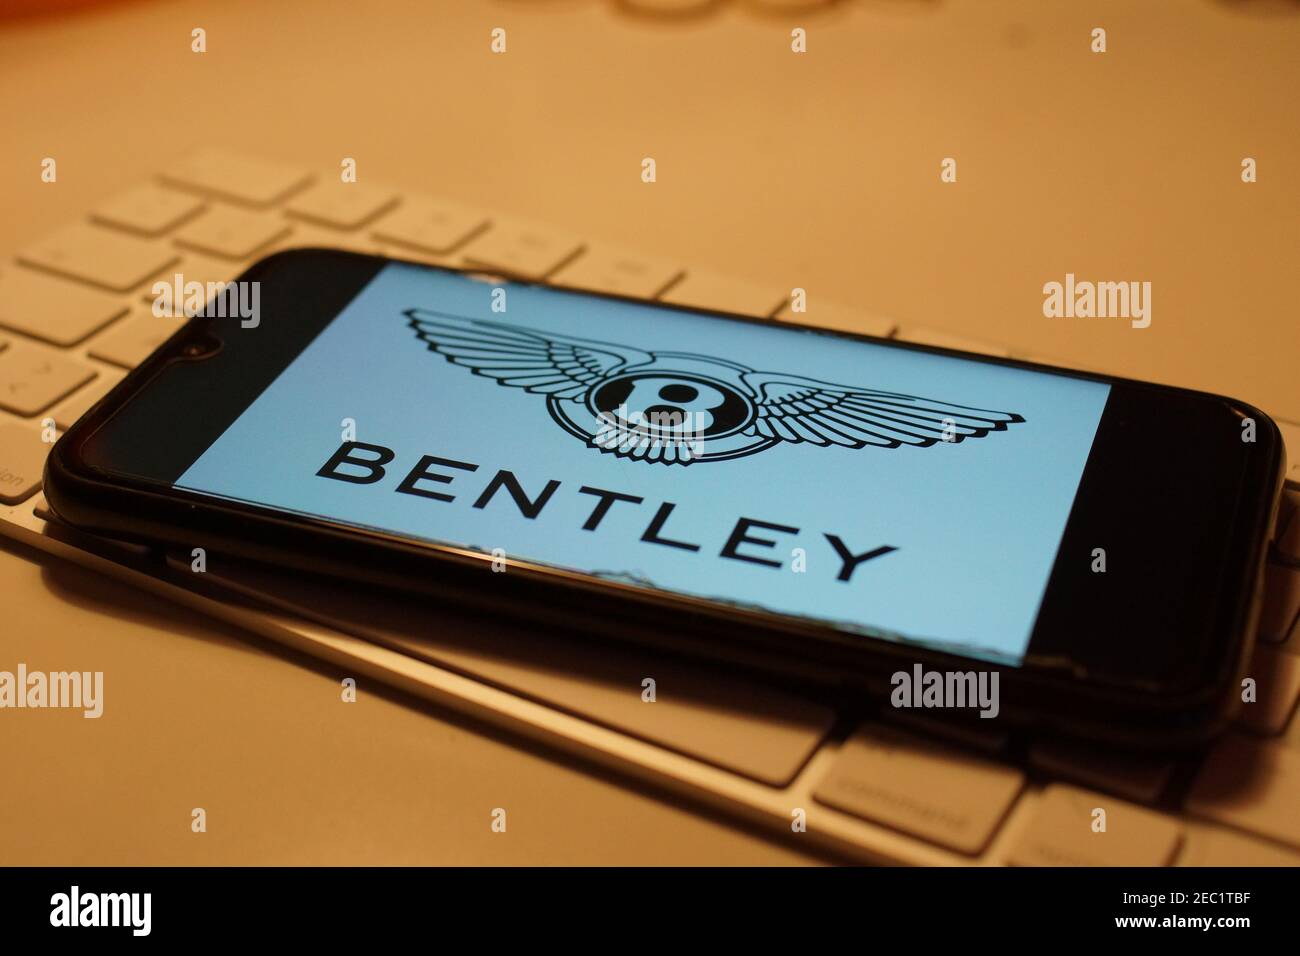 Smartphone with Bentley logo on computer keyboard Stock Photo